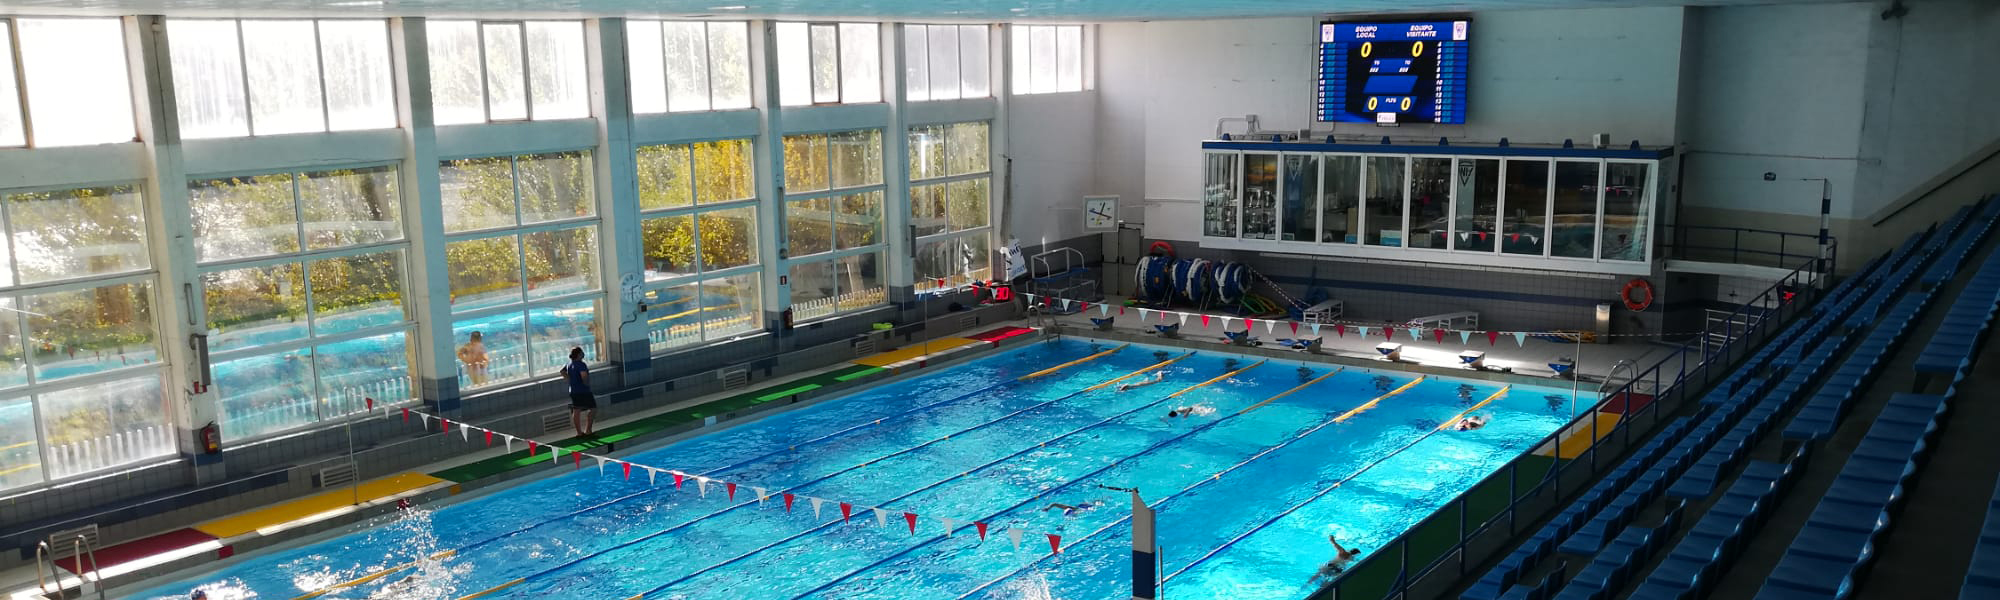 Mondo Smart Systems - Pantalla led en la piscina 'Manuel Molinero' del Centro Natación Helios de Zaragoza